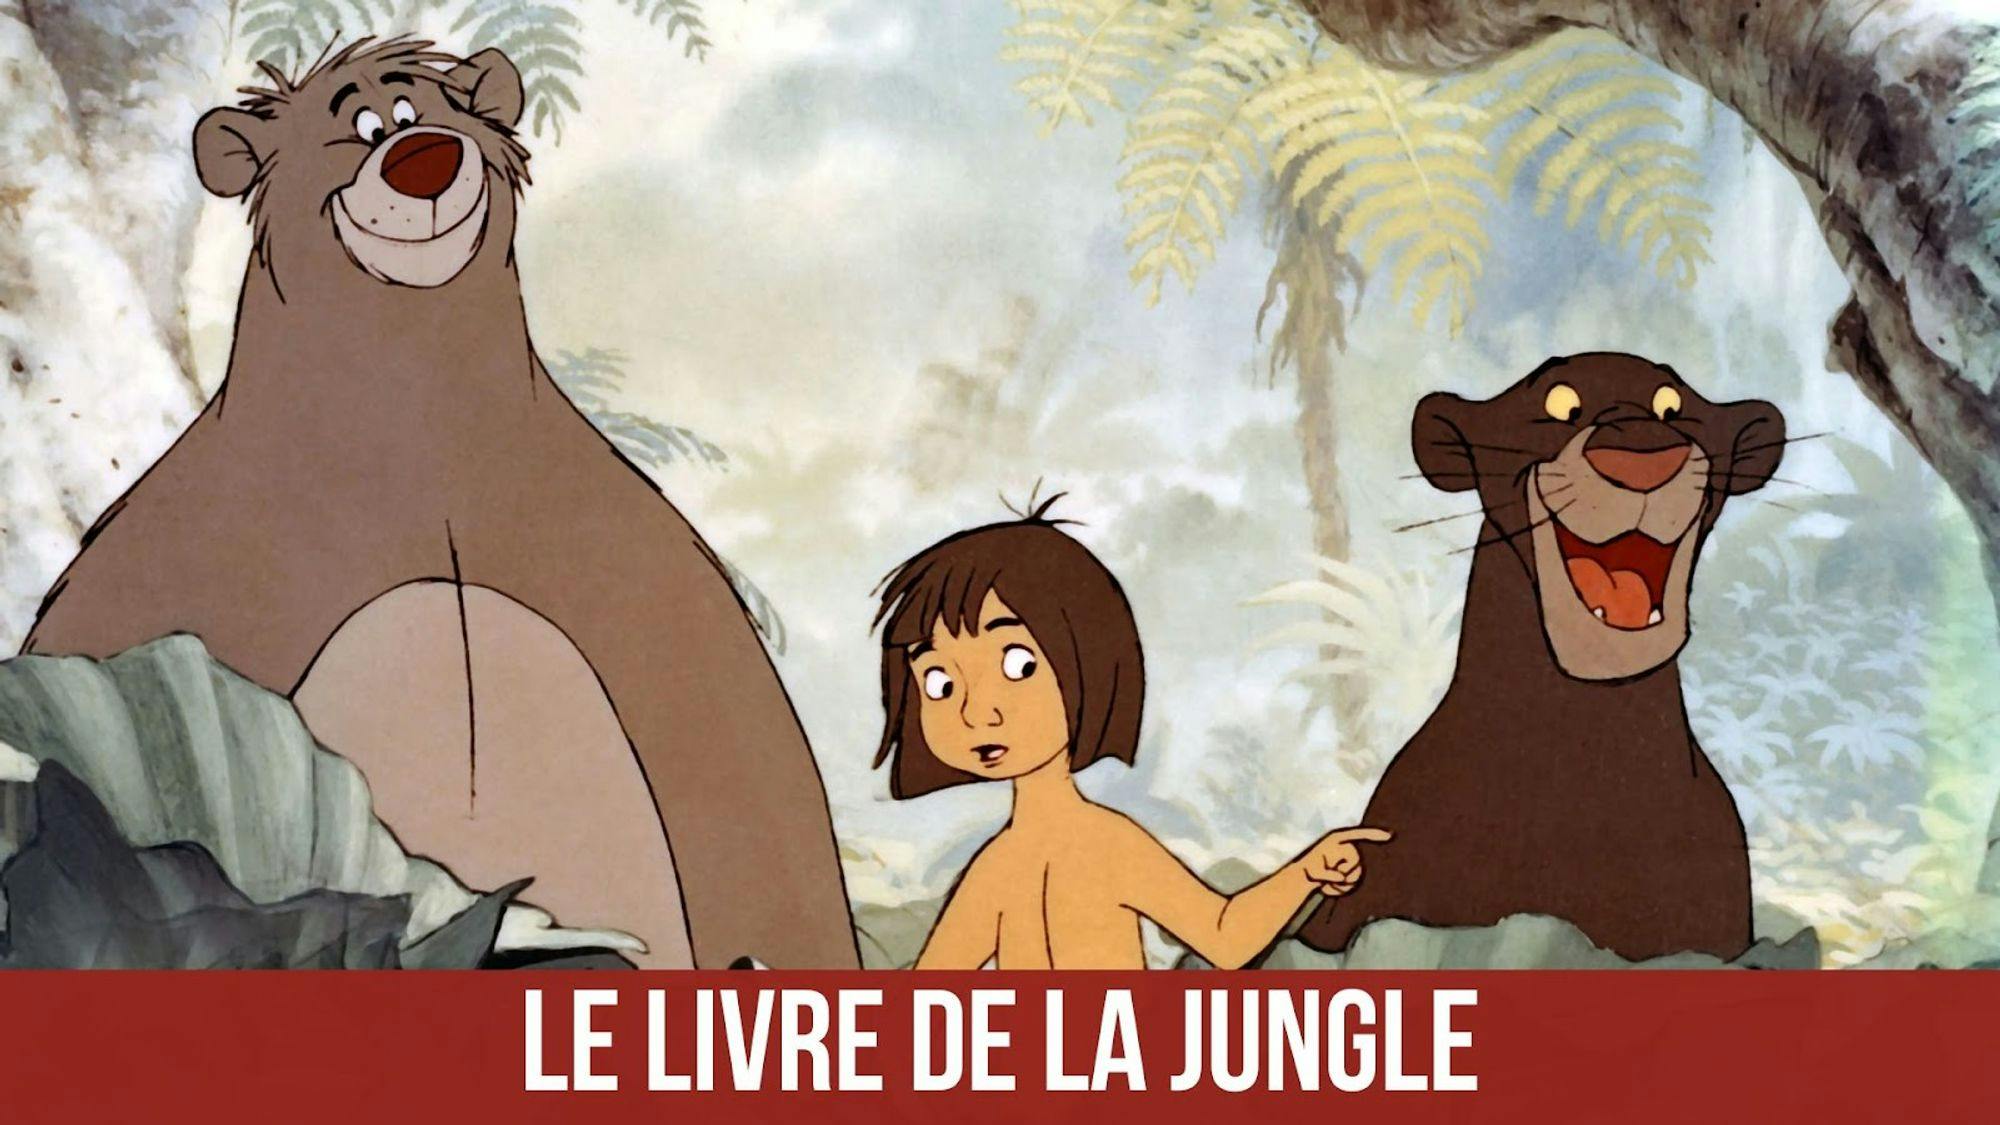 poster du film Le livre de la jungle avec un titre sur fond grenat